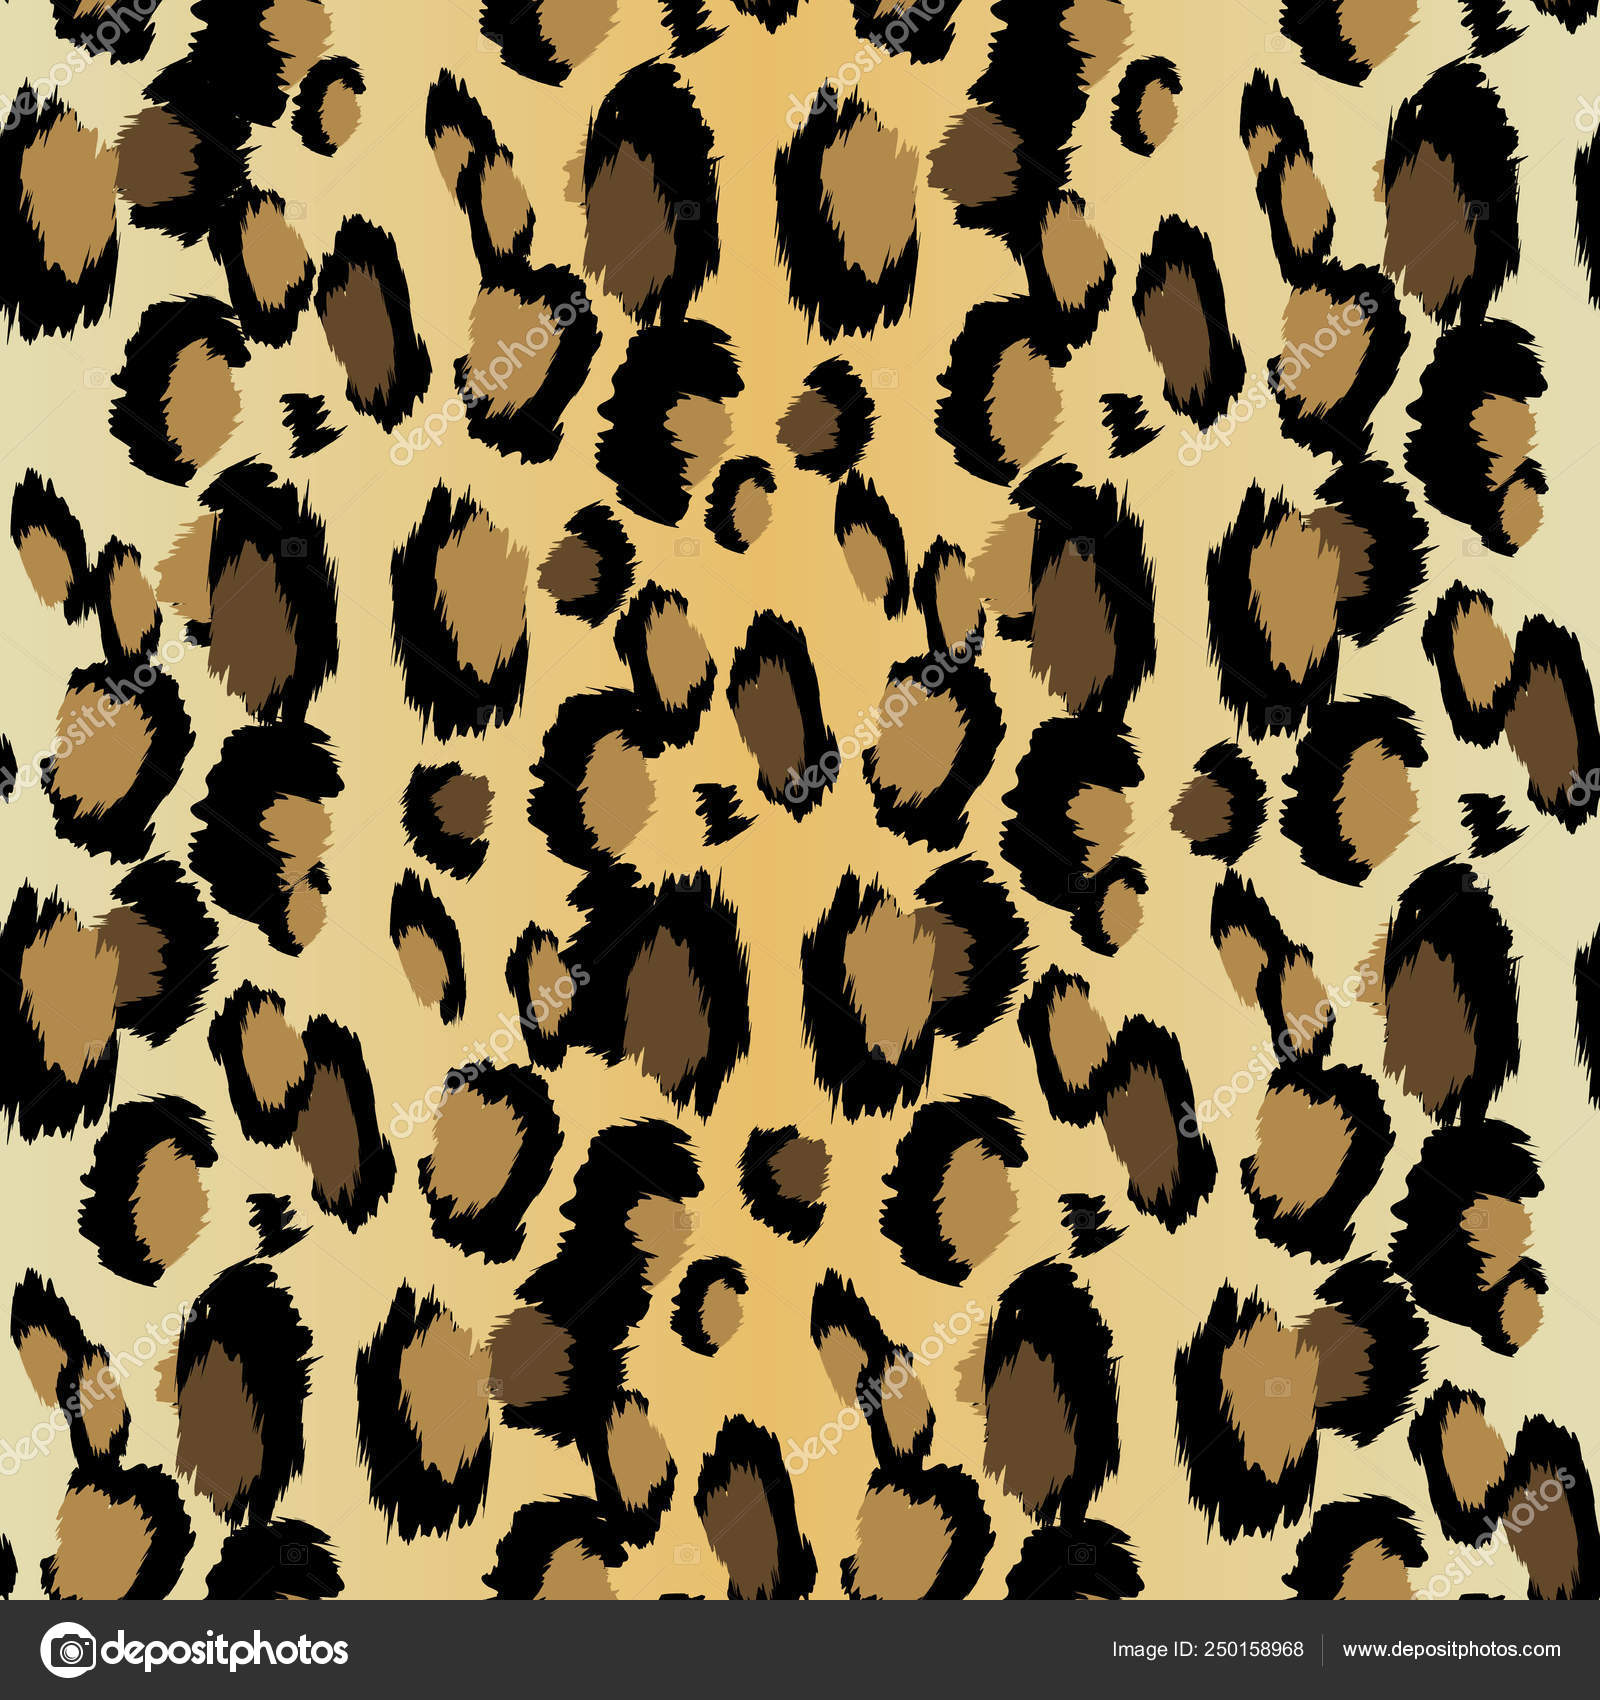 Leopardenmuster. nahtloser Vektordruck. realistische Tiertextur. schwarze  und gelbe Flecken auf beigem Hintergrund. abstraktes, sich wiederholendes  Muster - Leopardenhaut-Imitat kann auf Kleidung oder Stoff gemalt werden.  Stock-Vektorgrafik von